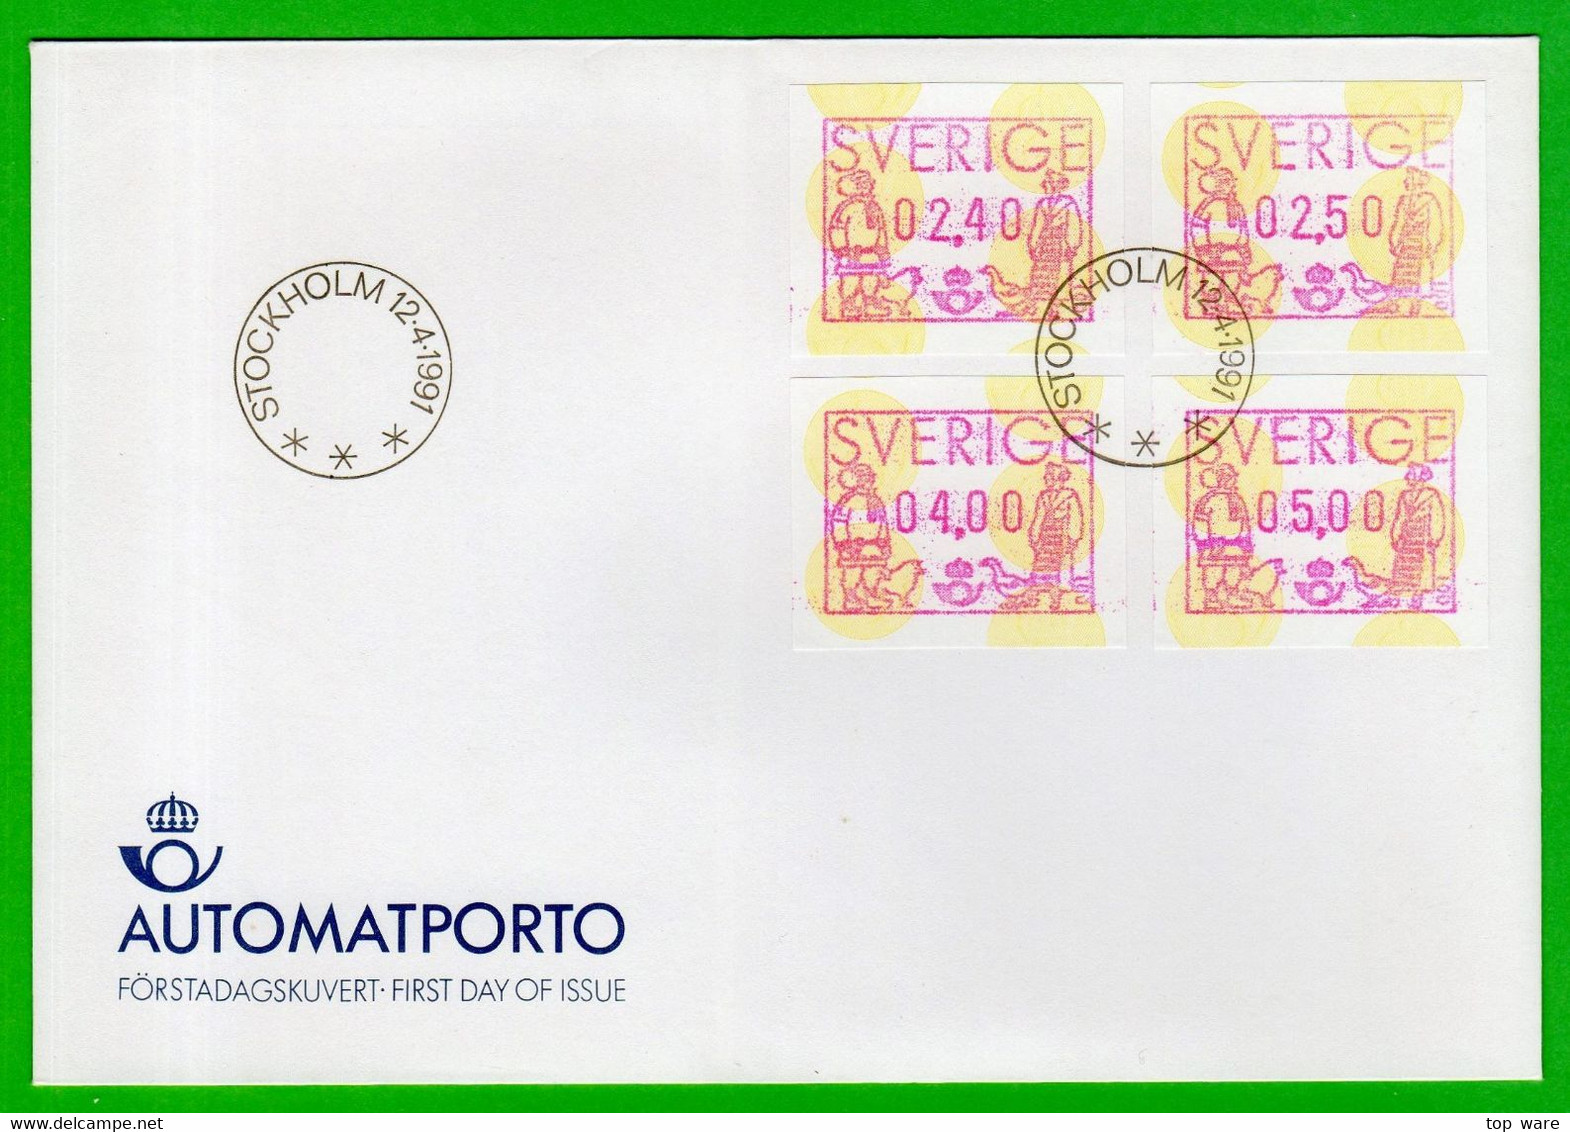 1991 Schweden Sweden ATM 1 / Offizieller FDC 12.4.1991 / Klüssendorf Automatenmarken Frama Etiquetas Automatici - Machine Labels [ATM]